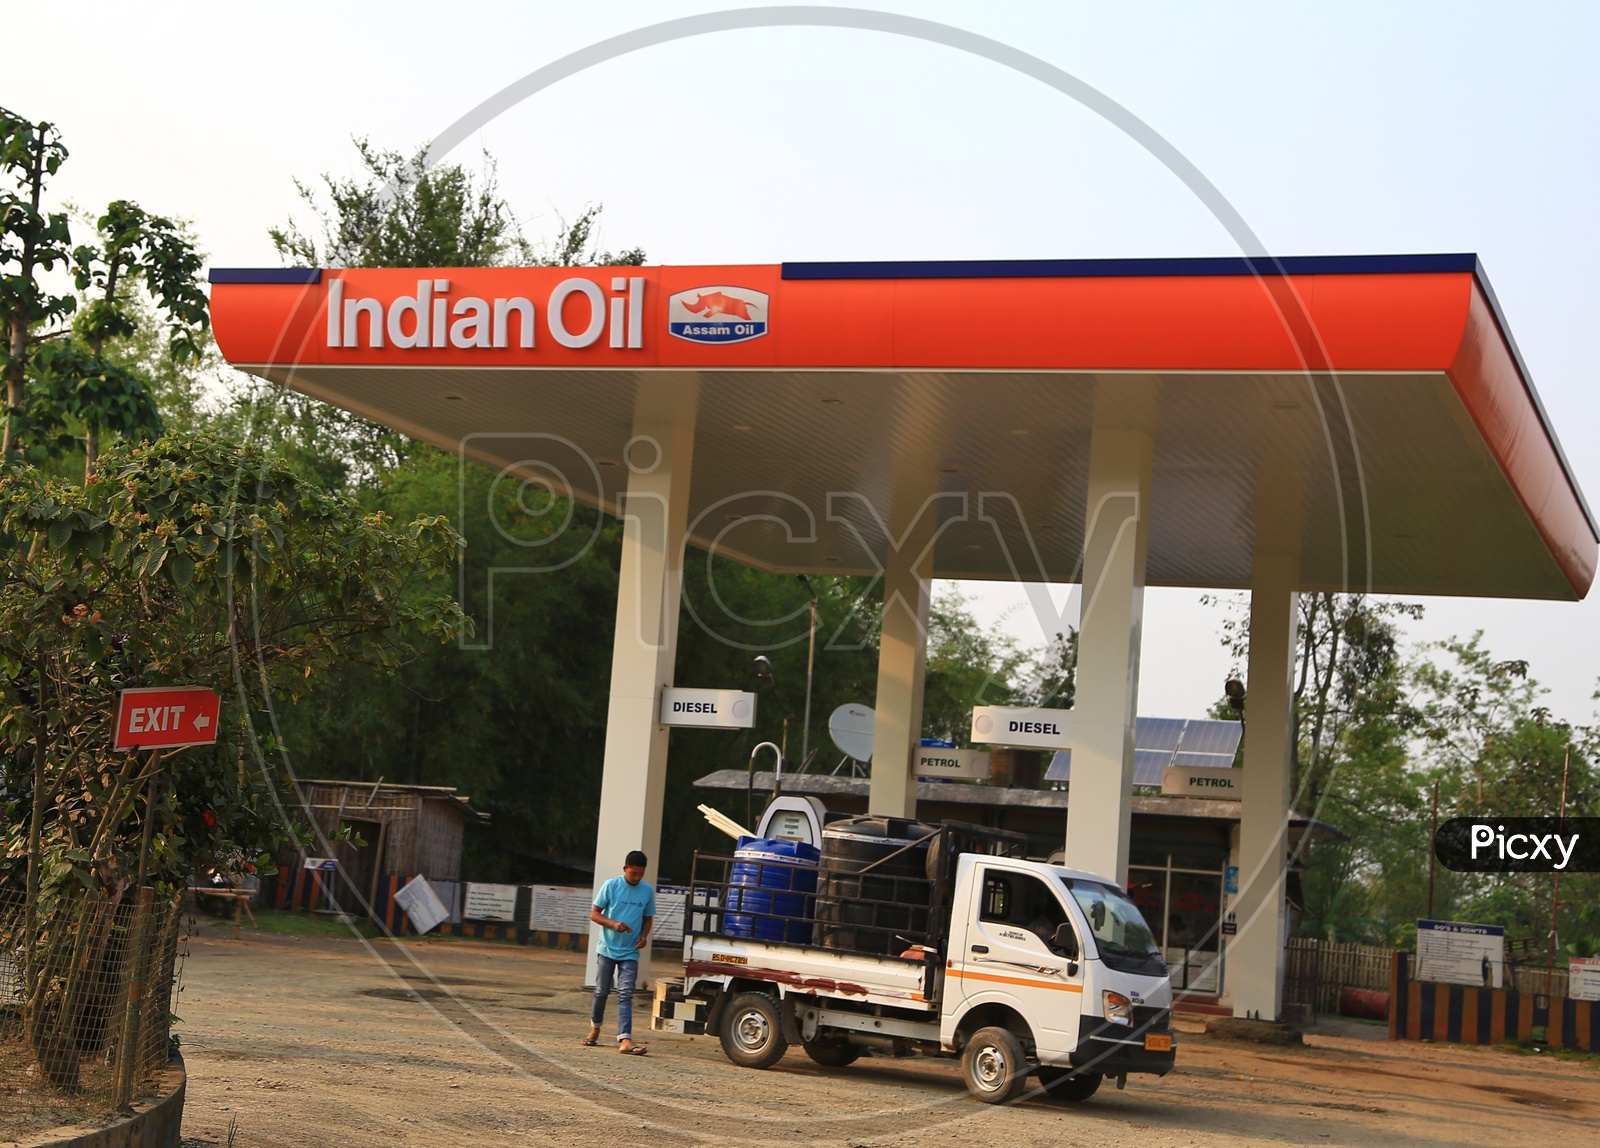 Indian oil bunk/ Assam Oil